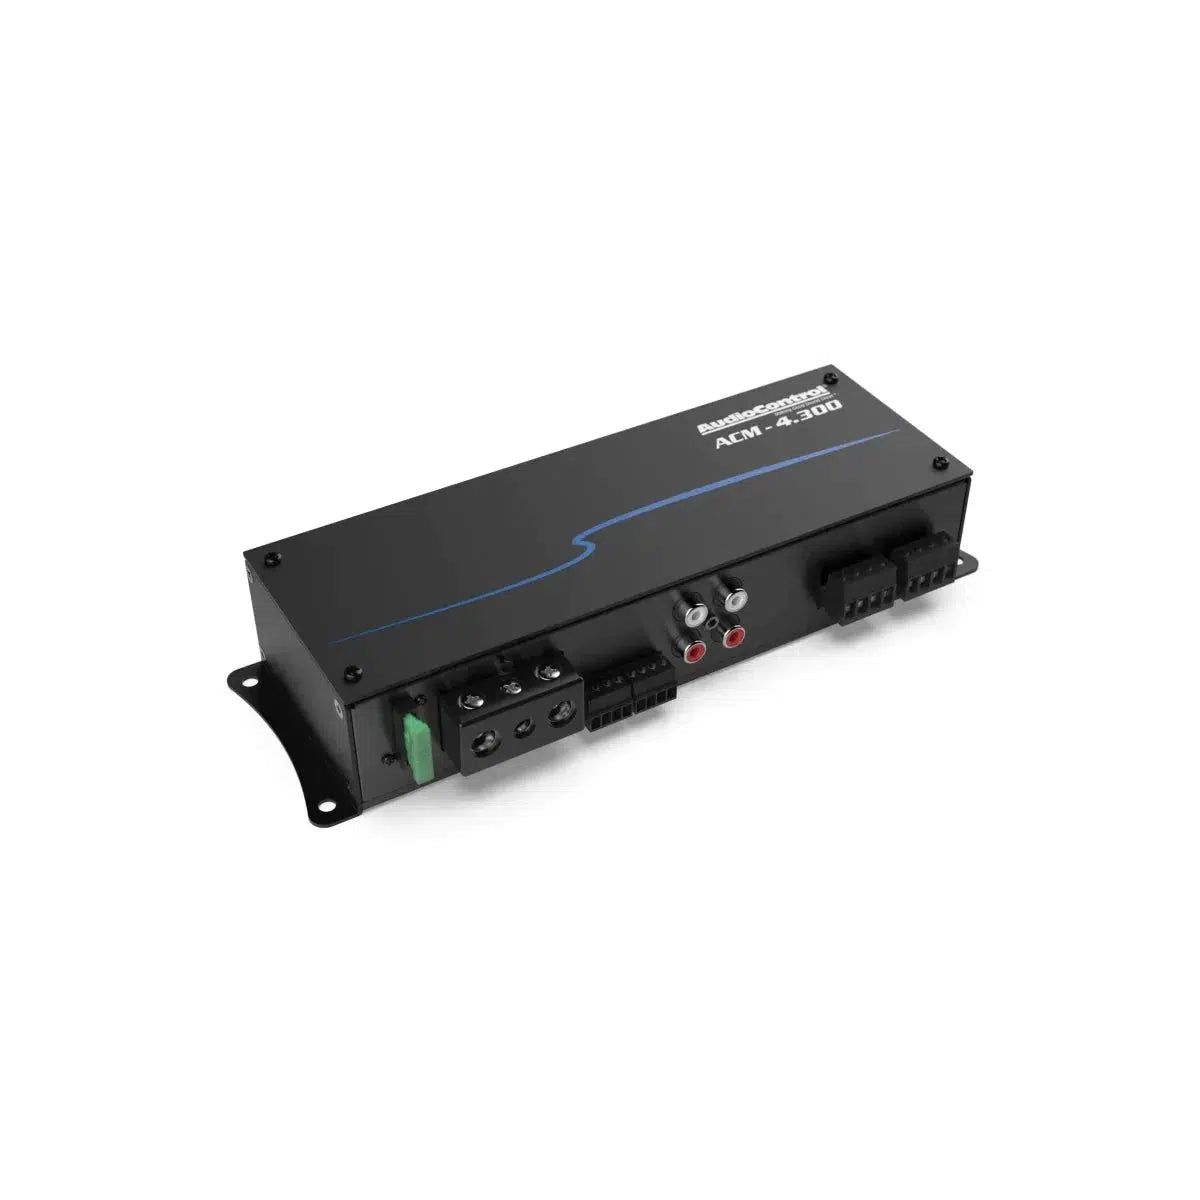 Audiocontrol-ACM-4.300-4-Channel Amplifier-Masori.de